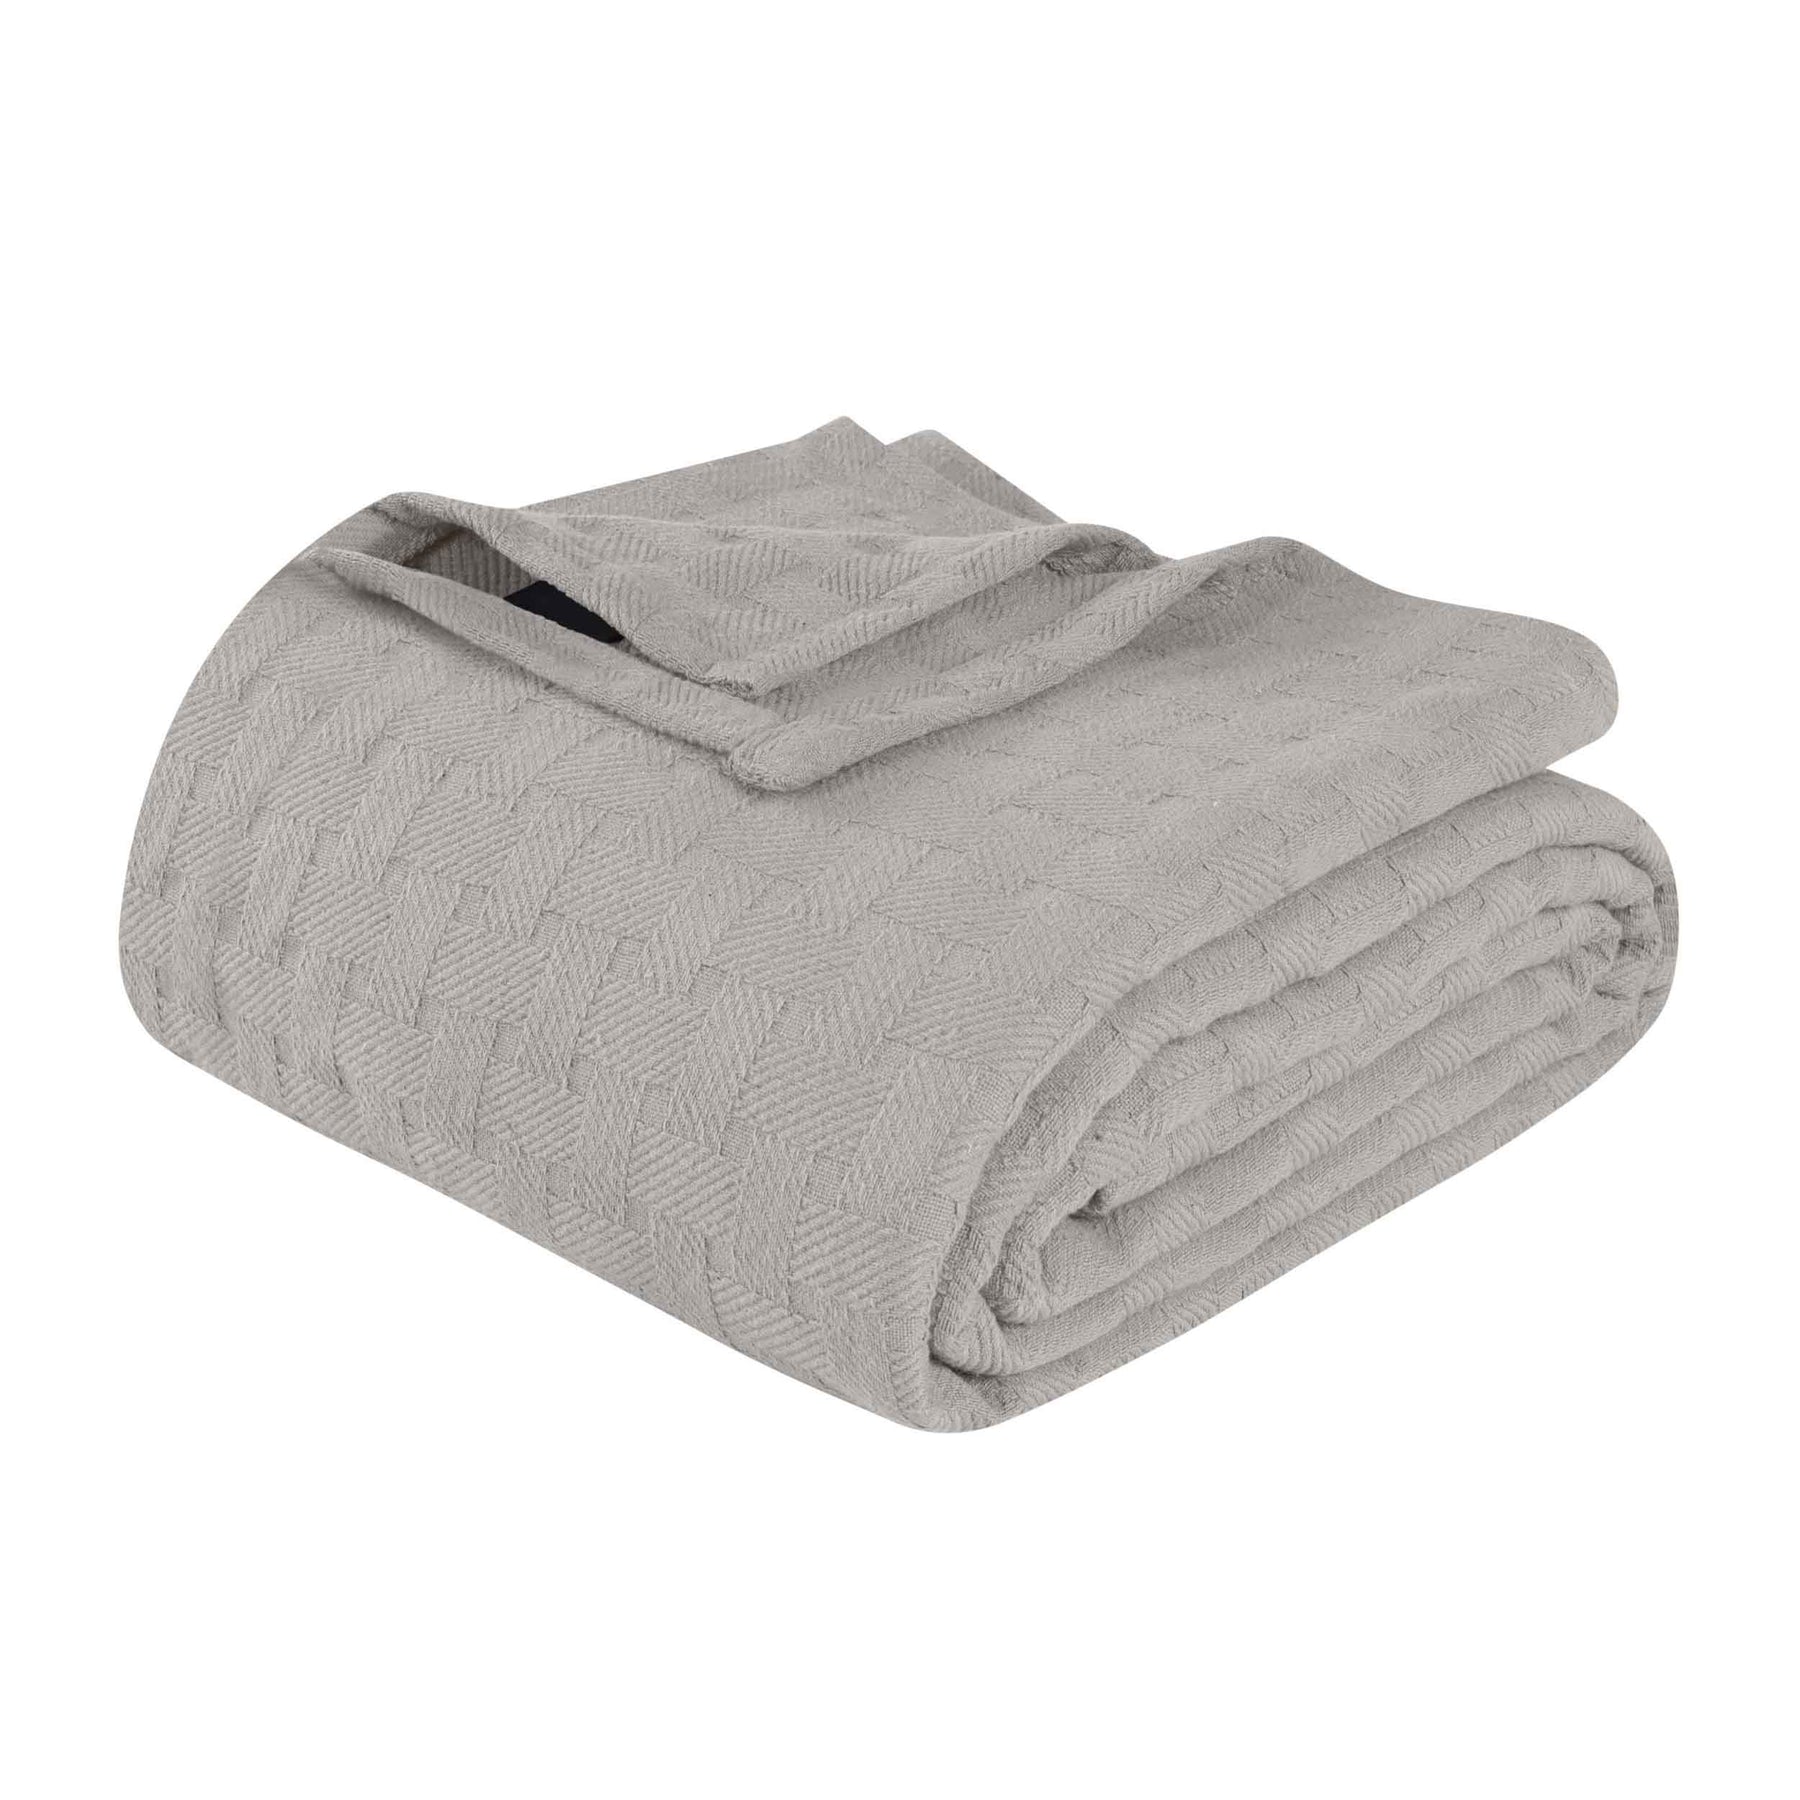 Basketweave All Season Cotton Blanket - Silver